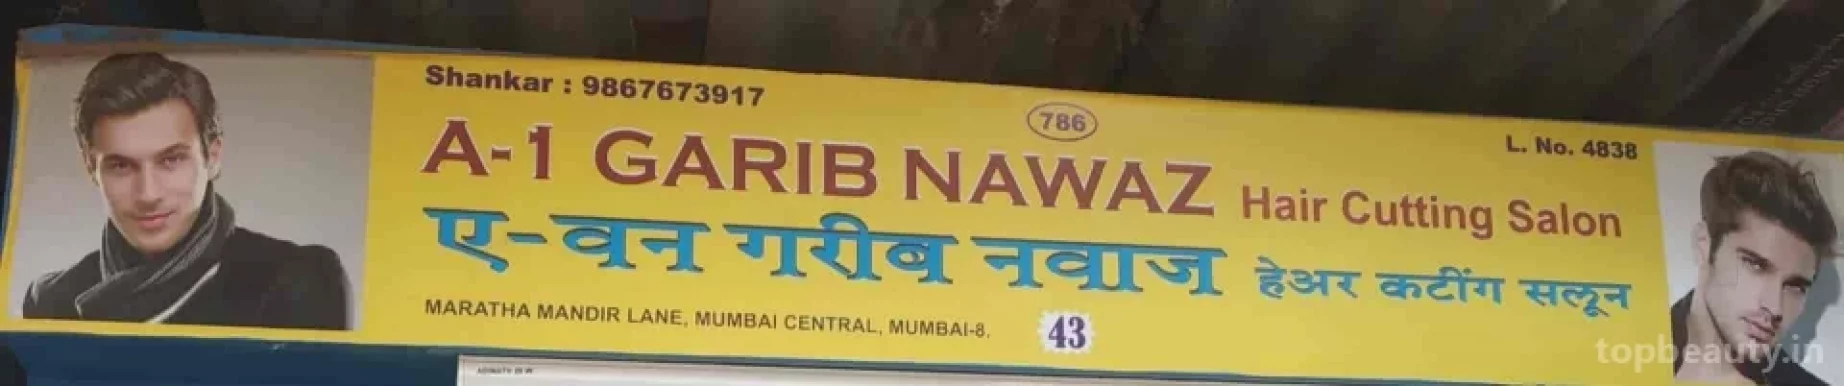 A-1 Garib nawaz hair salon, Mumbai - Photo 1